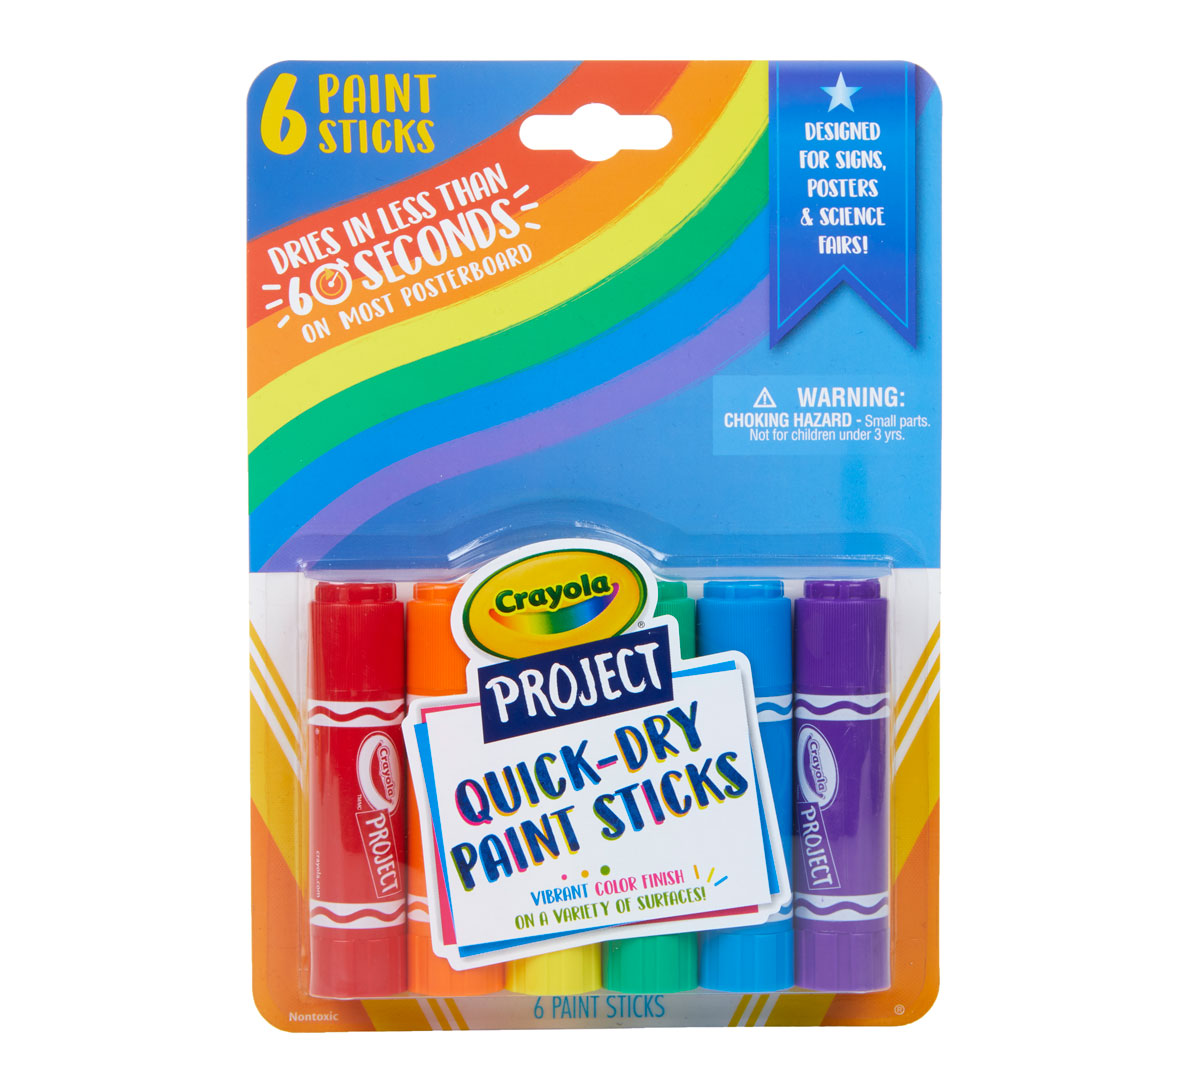 Crayola 3ct Multicolor Safety Scissors